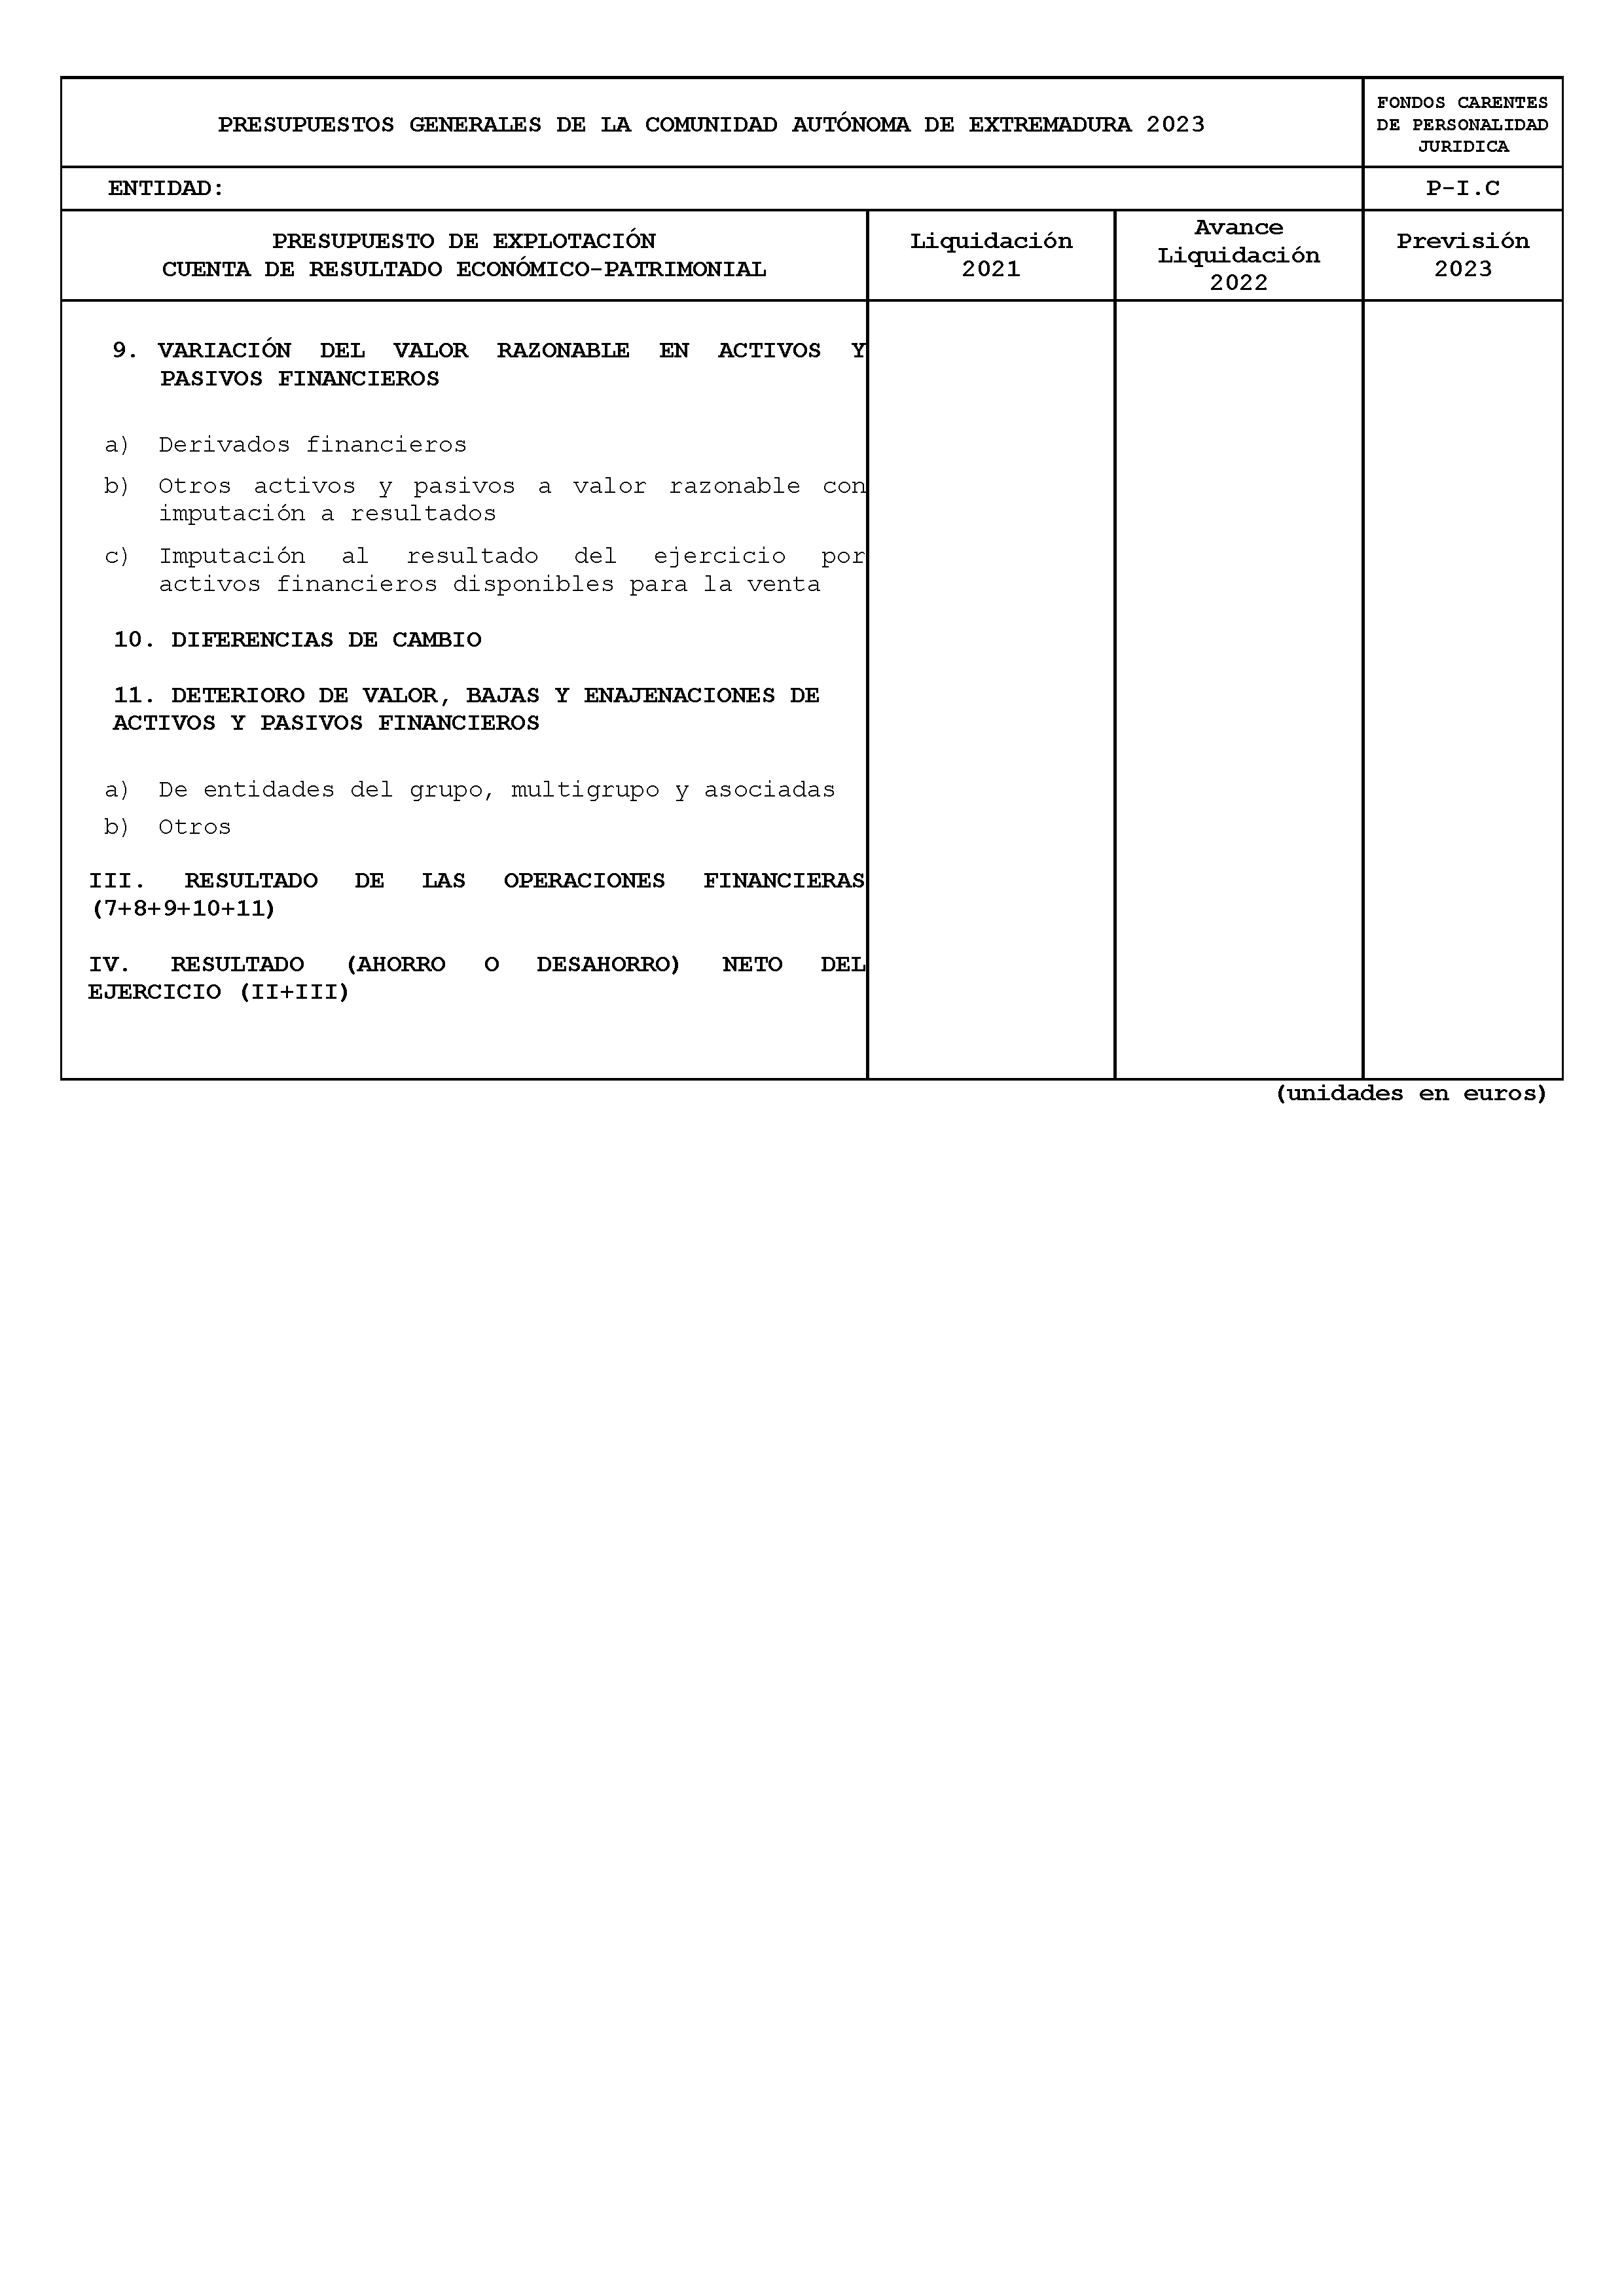 ANEXO XI FICHAS DE CUMPLIMENTACIÓN DEL SECTOR PÚBLICO AUTONÓMICO CON PRESUPUESTO ESTIMATIVO Pag 27